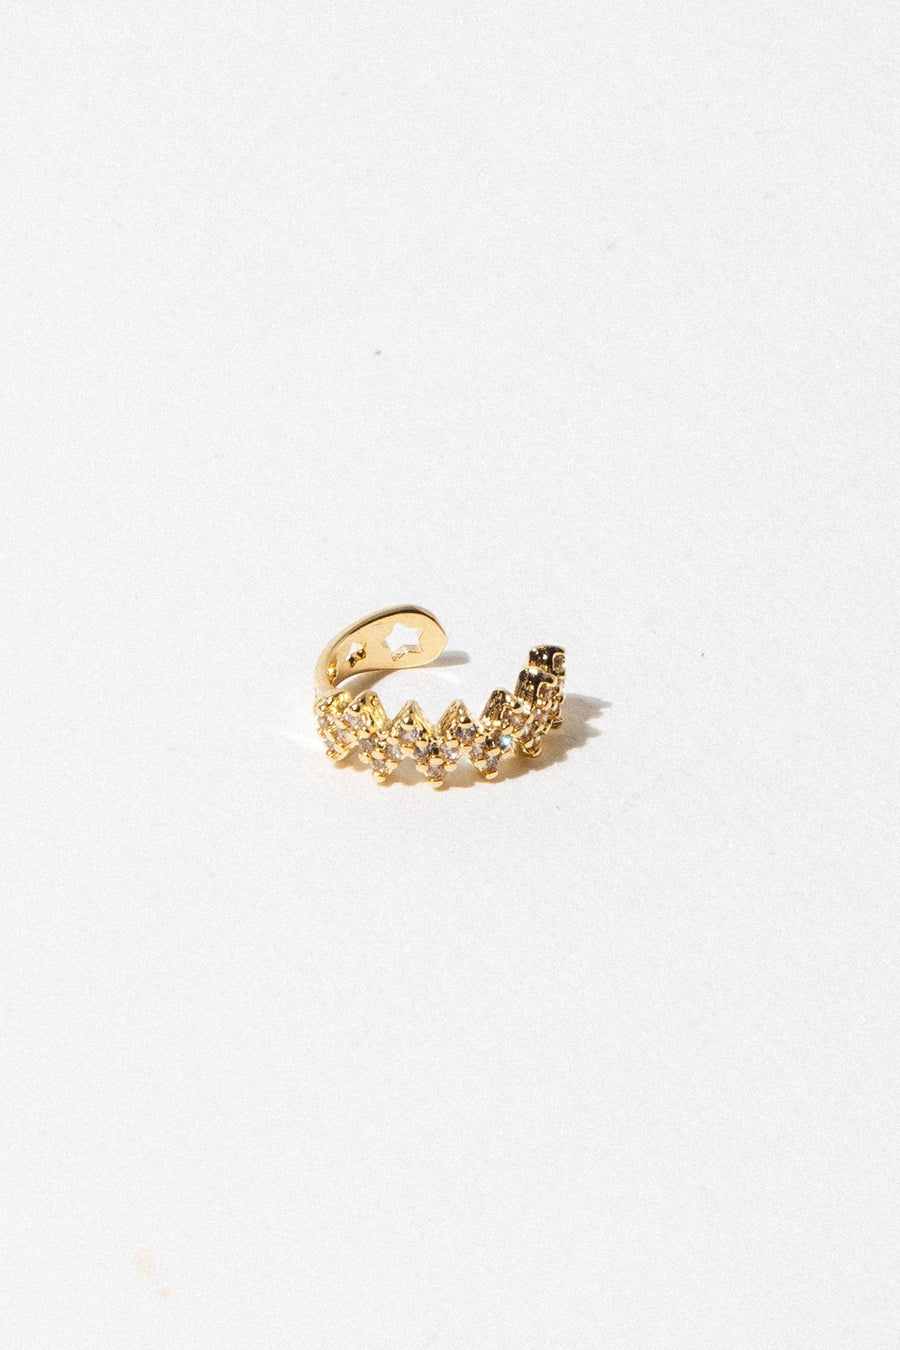 Dona Italia Jewelry Gold CZ Diamondete Ear Cuff